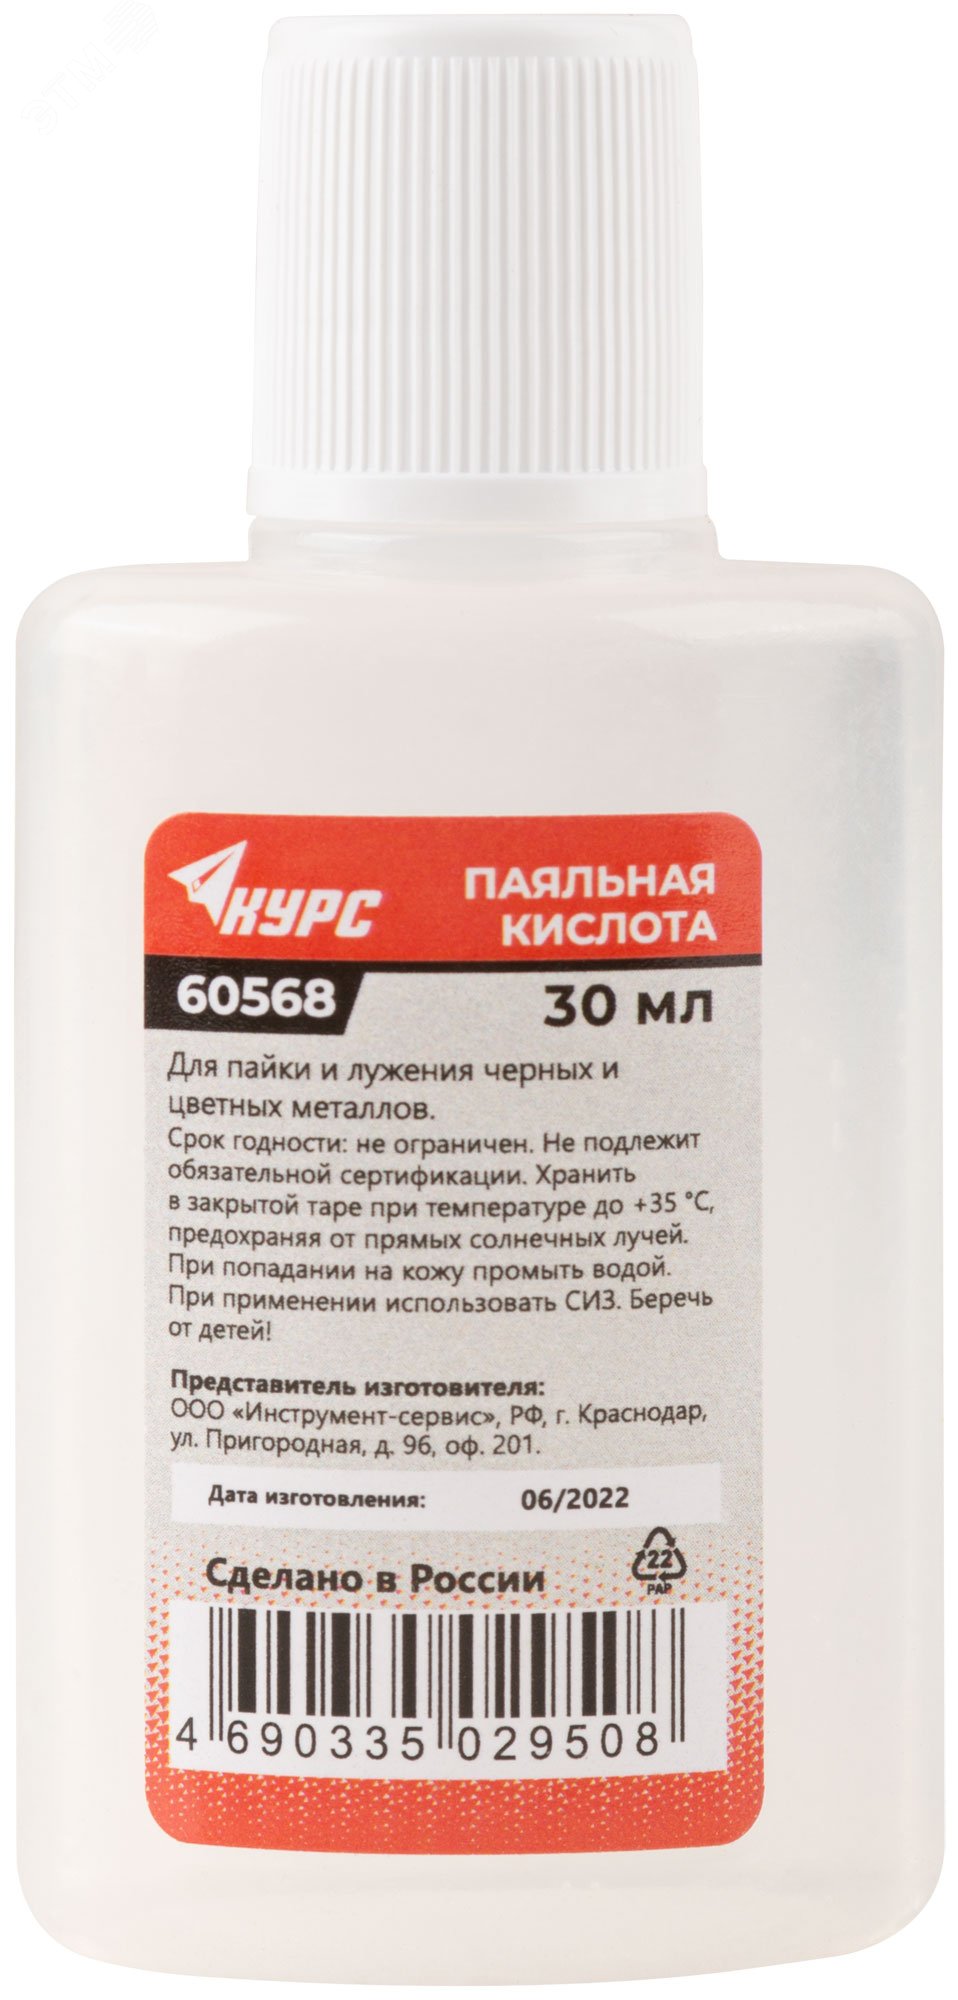 Паяльная кислота (высокоактивный флюс на основе хлористых солей цинка) 30 мл 60568 РОС - превью